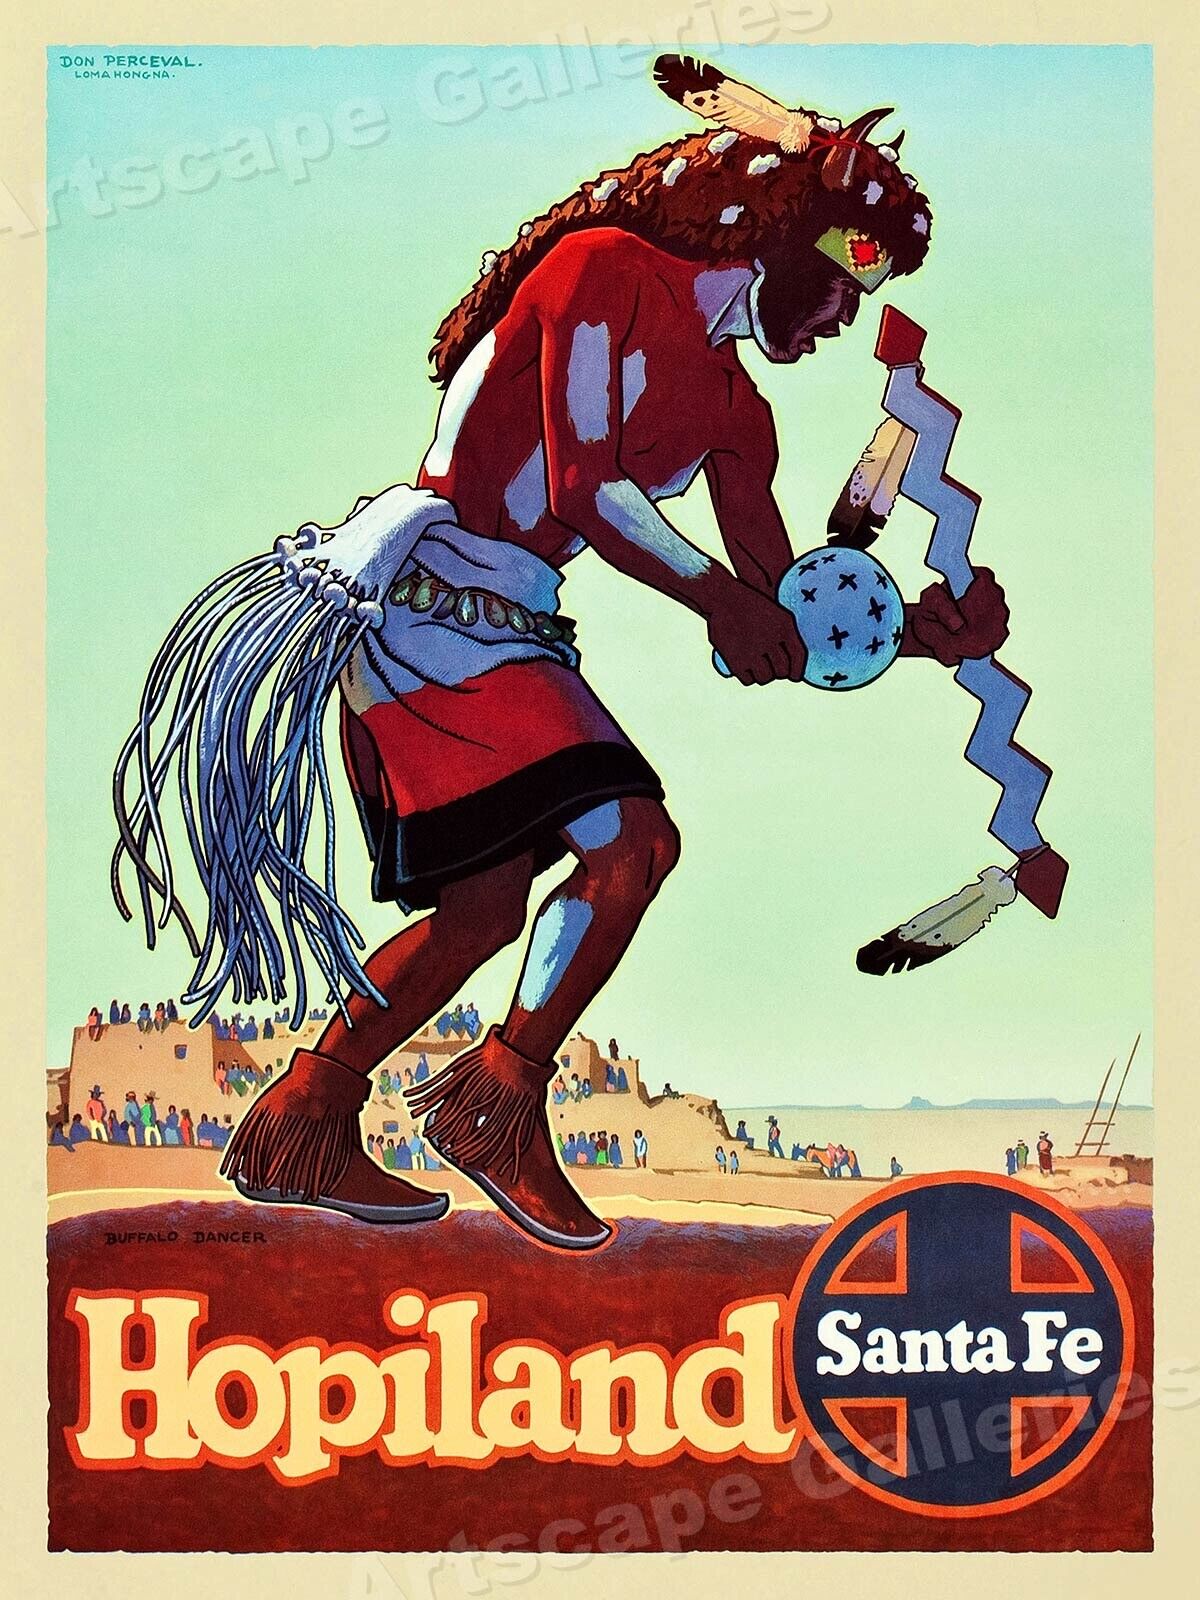 HopiLand 1949 Santa Fe Railroad Travel Poster - 24x32